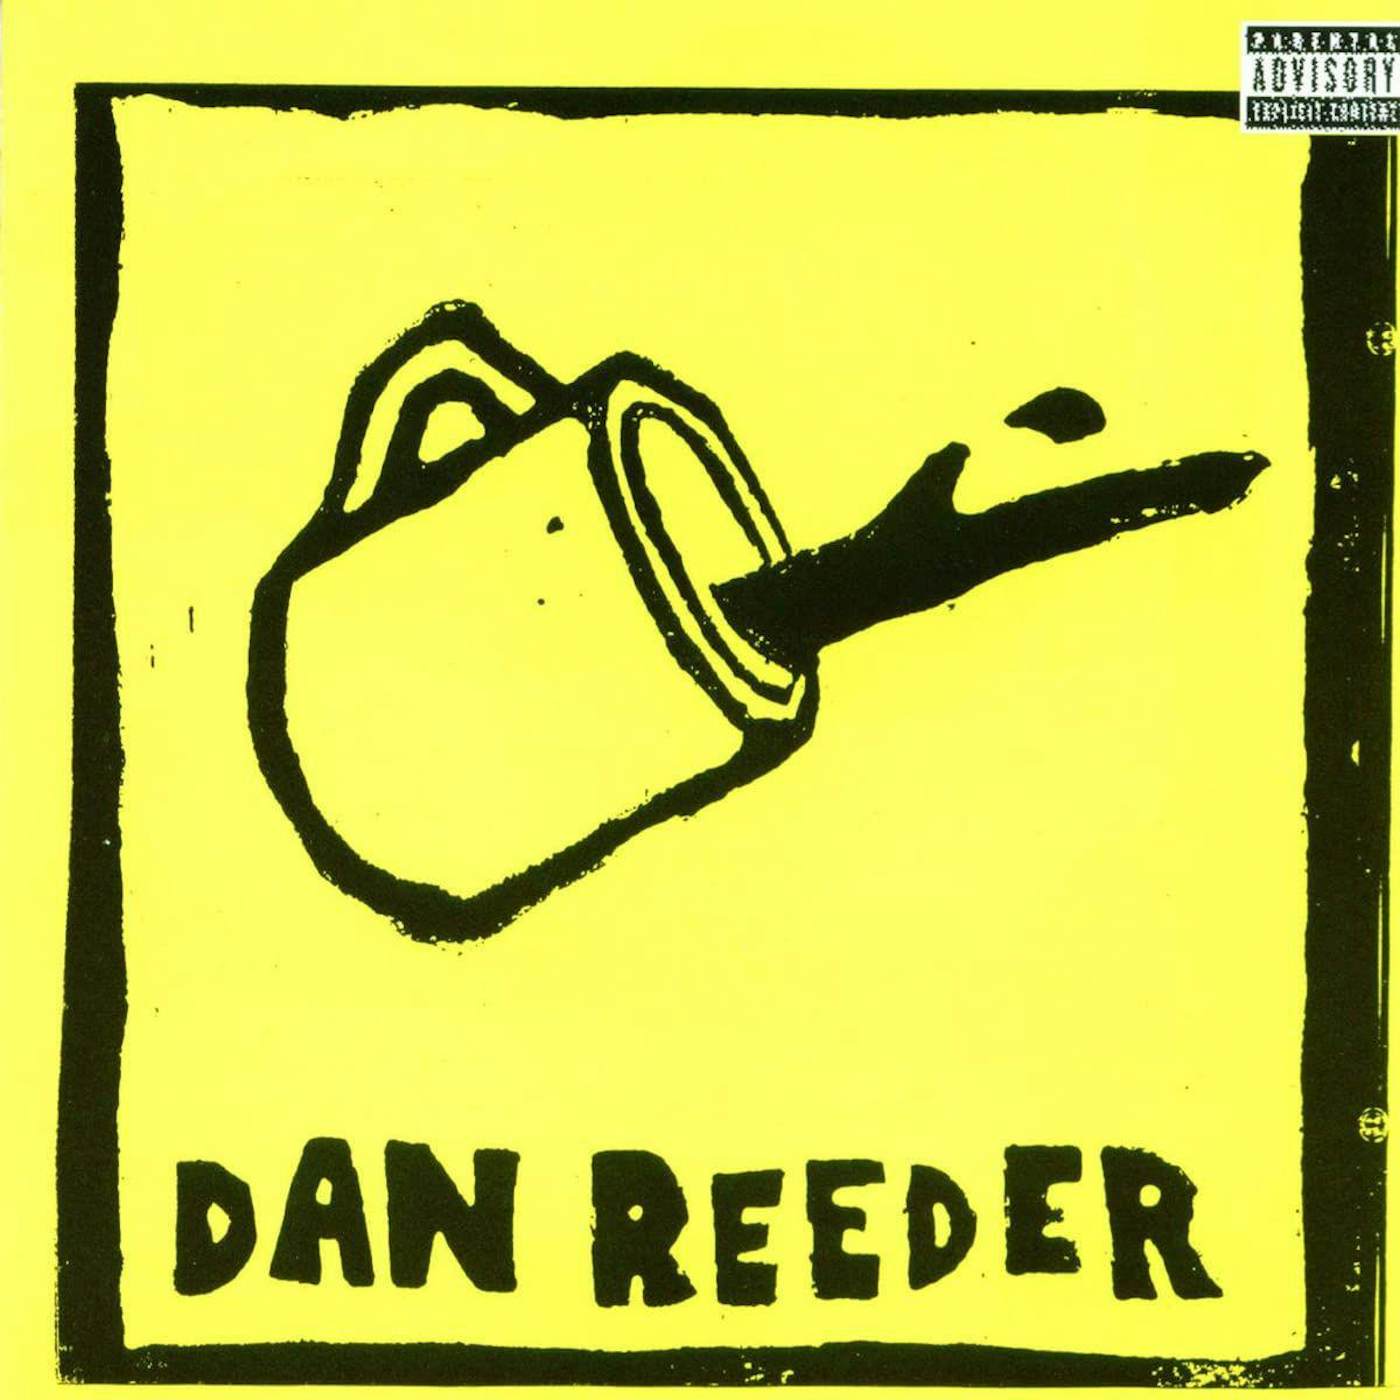 Dan Reeder Vinyl Record